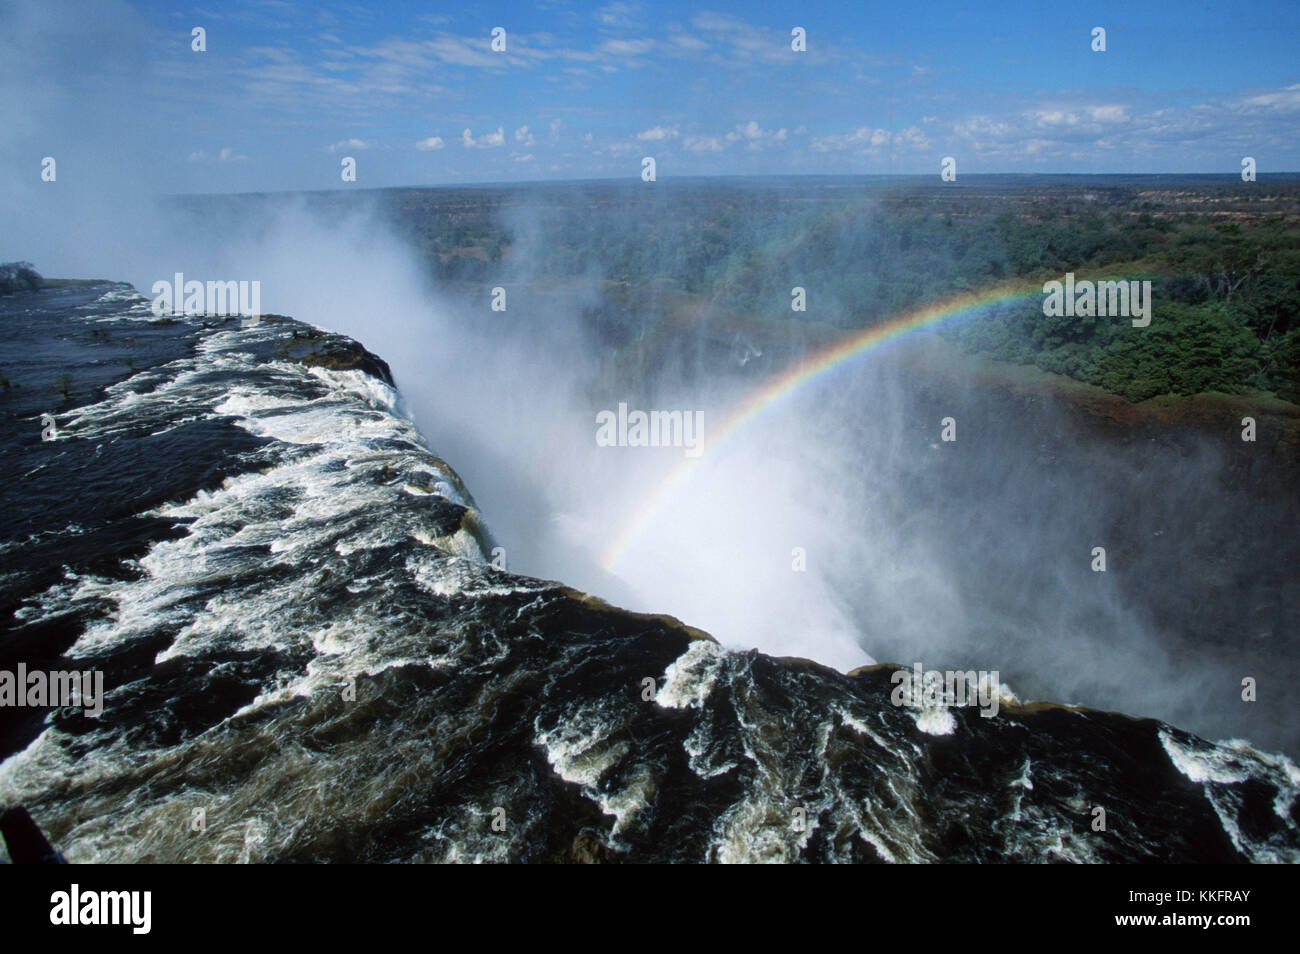 Rainbow presso il Victoria falls, Zimbabwe / zambia / regenbogen an den viktoriafaellen, simbabwe / Zambia / viktoriafälle | Utilizzo di tutto il mondo Foto Stock